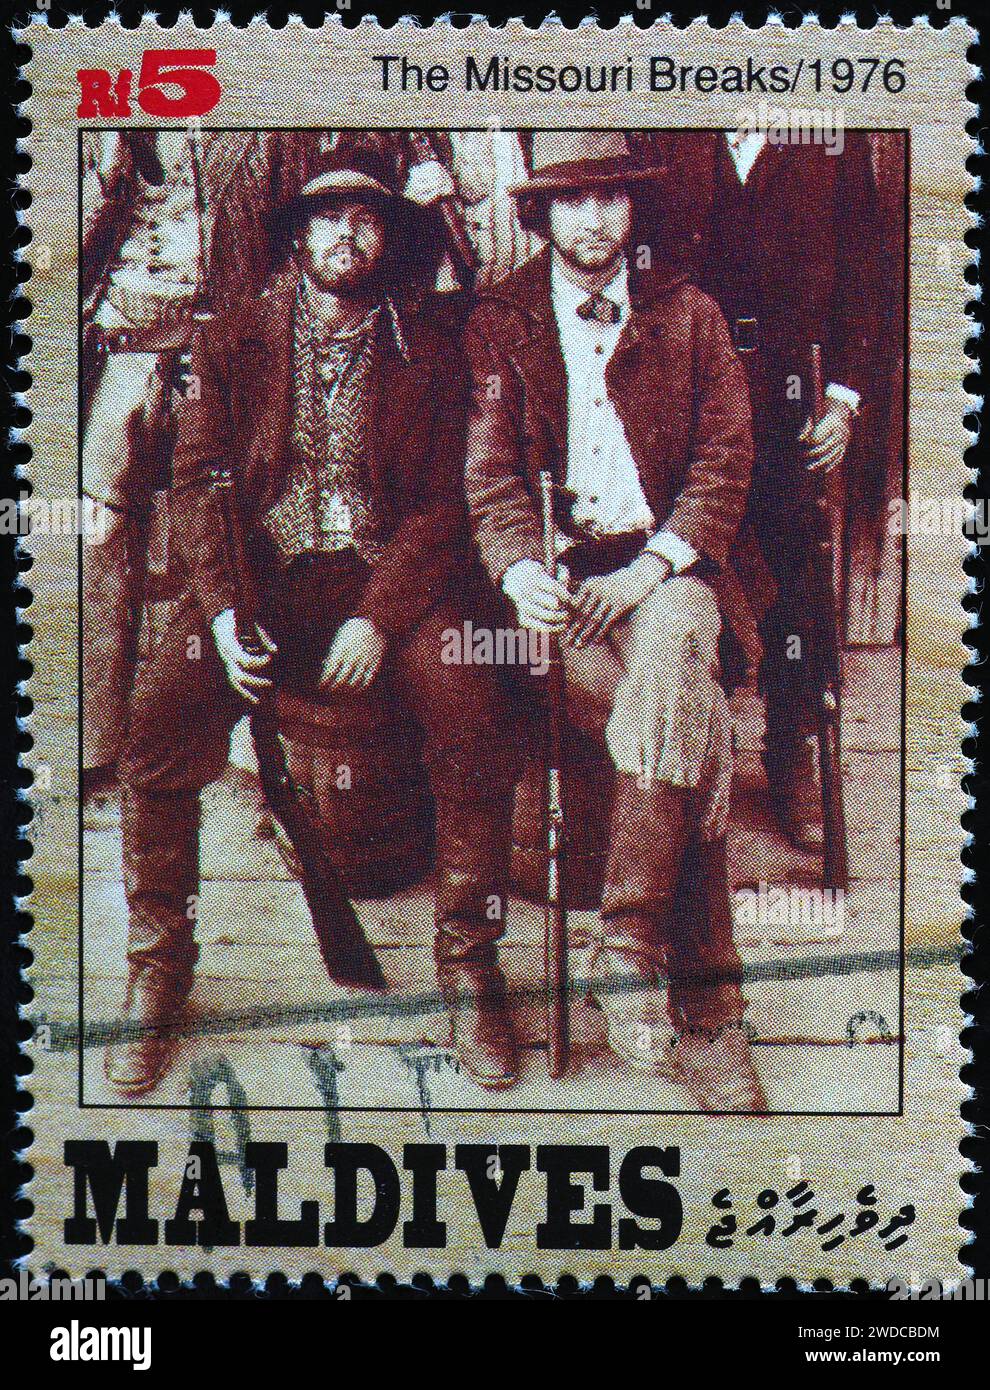 Photo de Jack Nicholson dans 'The Missouri Breaks' sur timbre-poste Banque D'Images